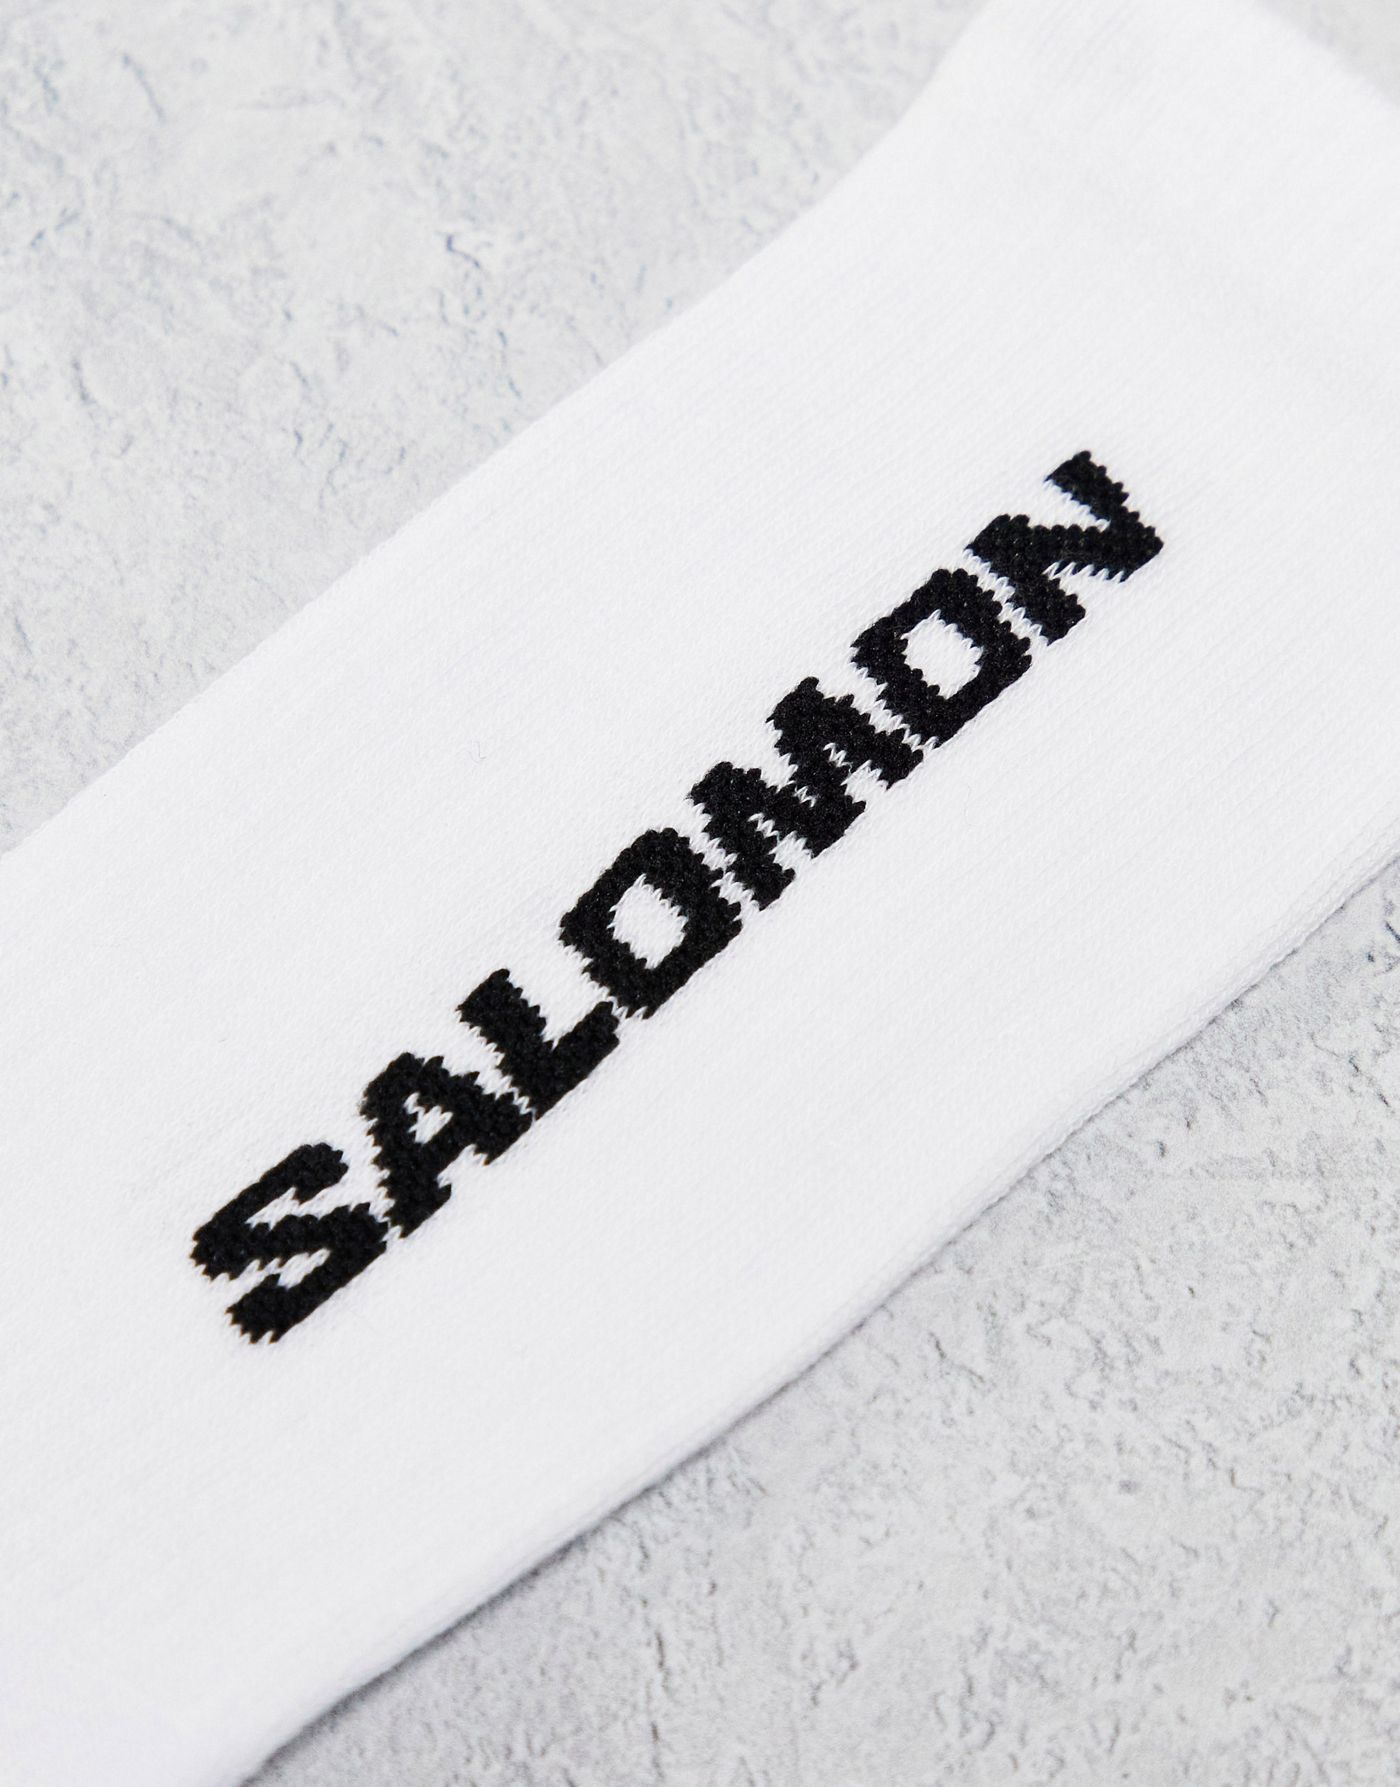 Salomon 3 pack of everyday unisex crew socks in white